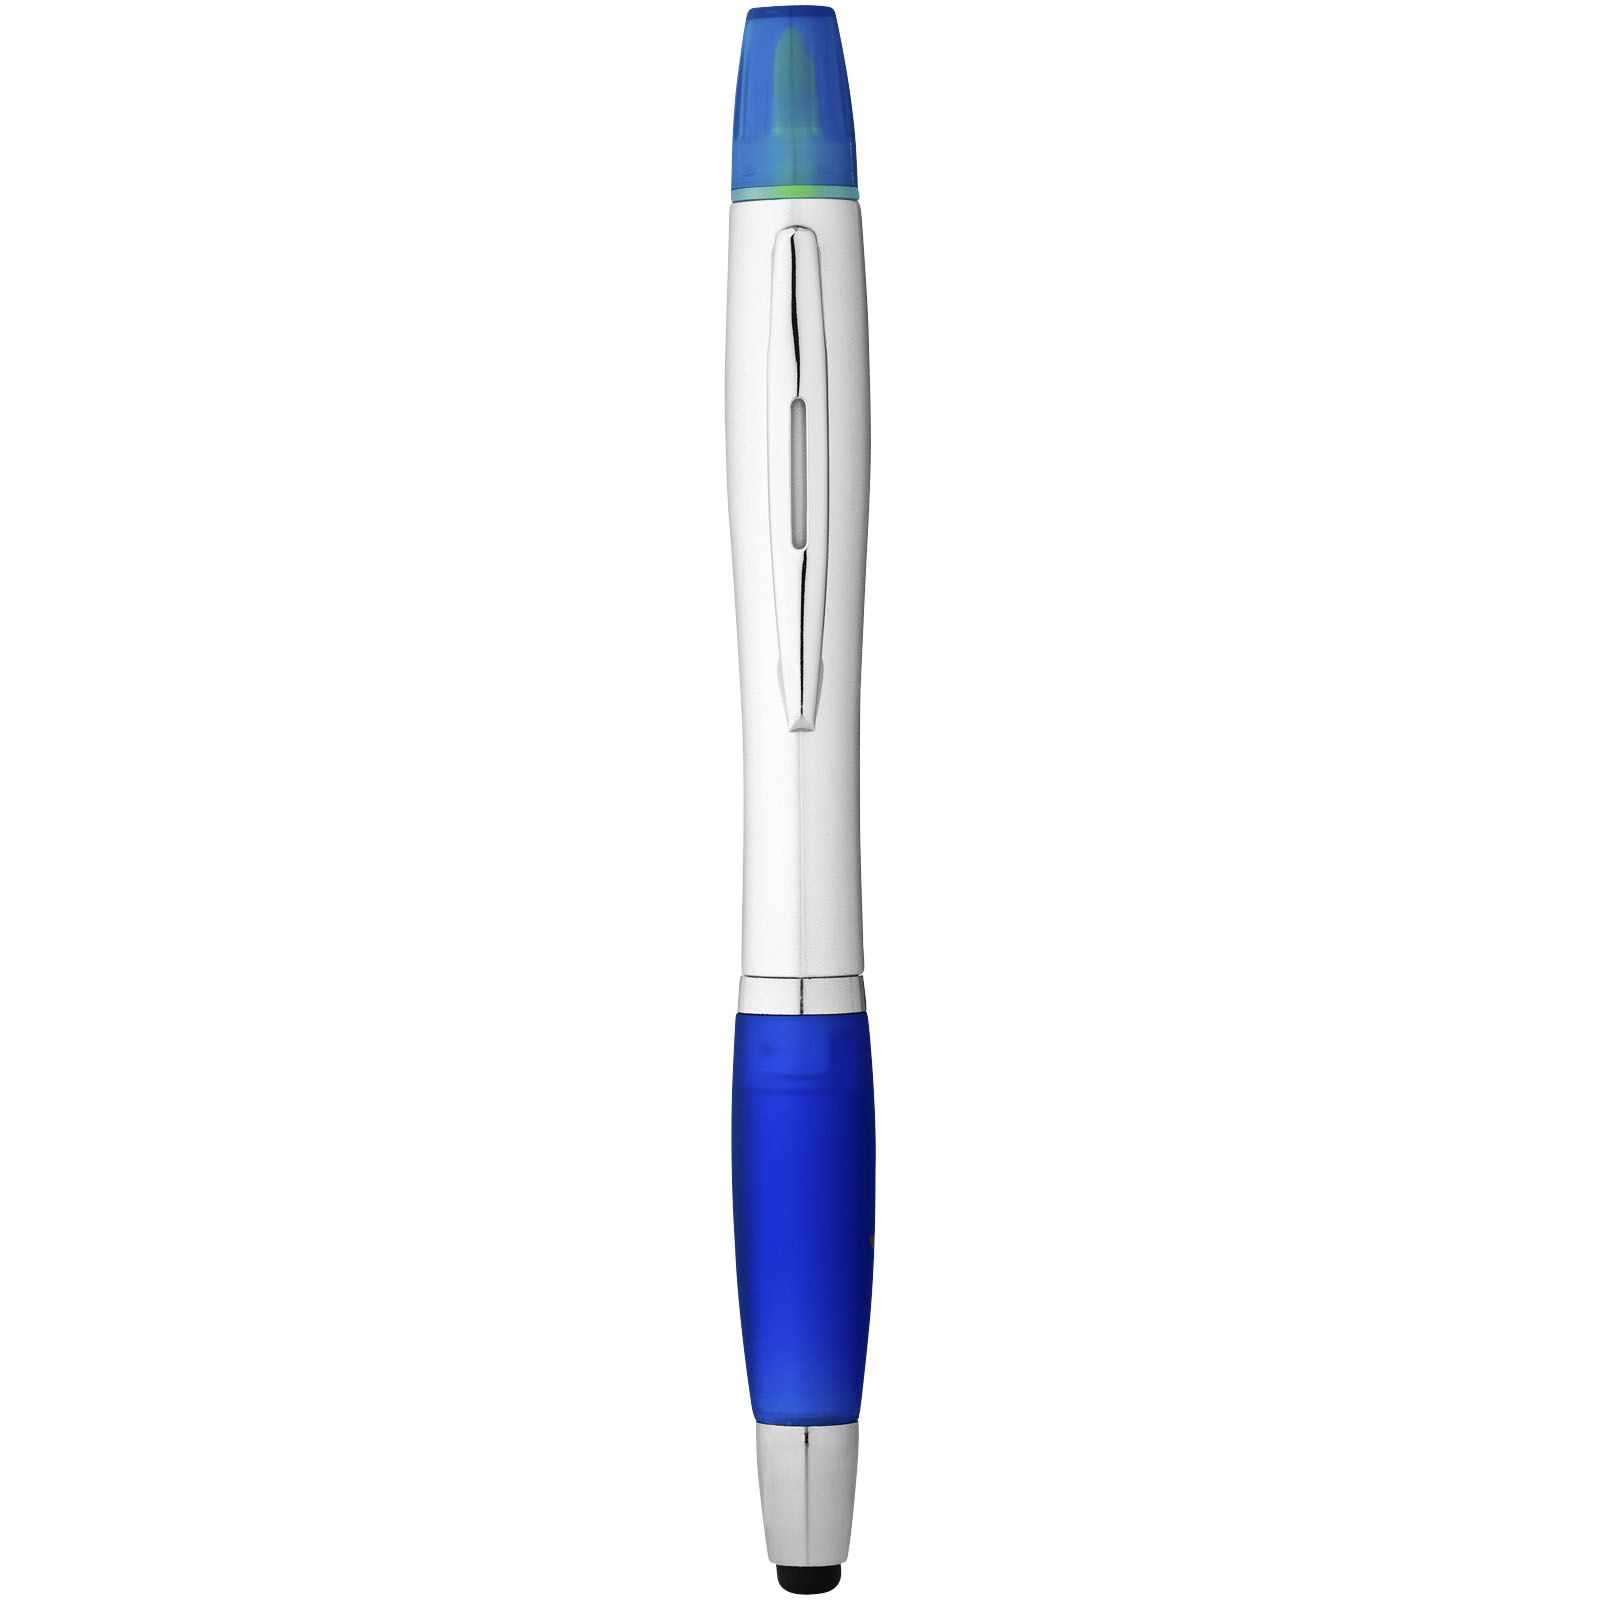 Advertising Ballpoint Pens - Nash stylus ballpoint pen and highlighter - 1